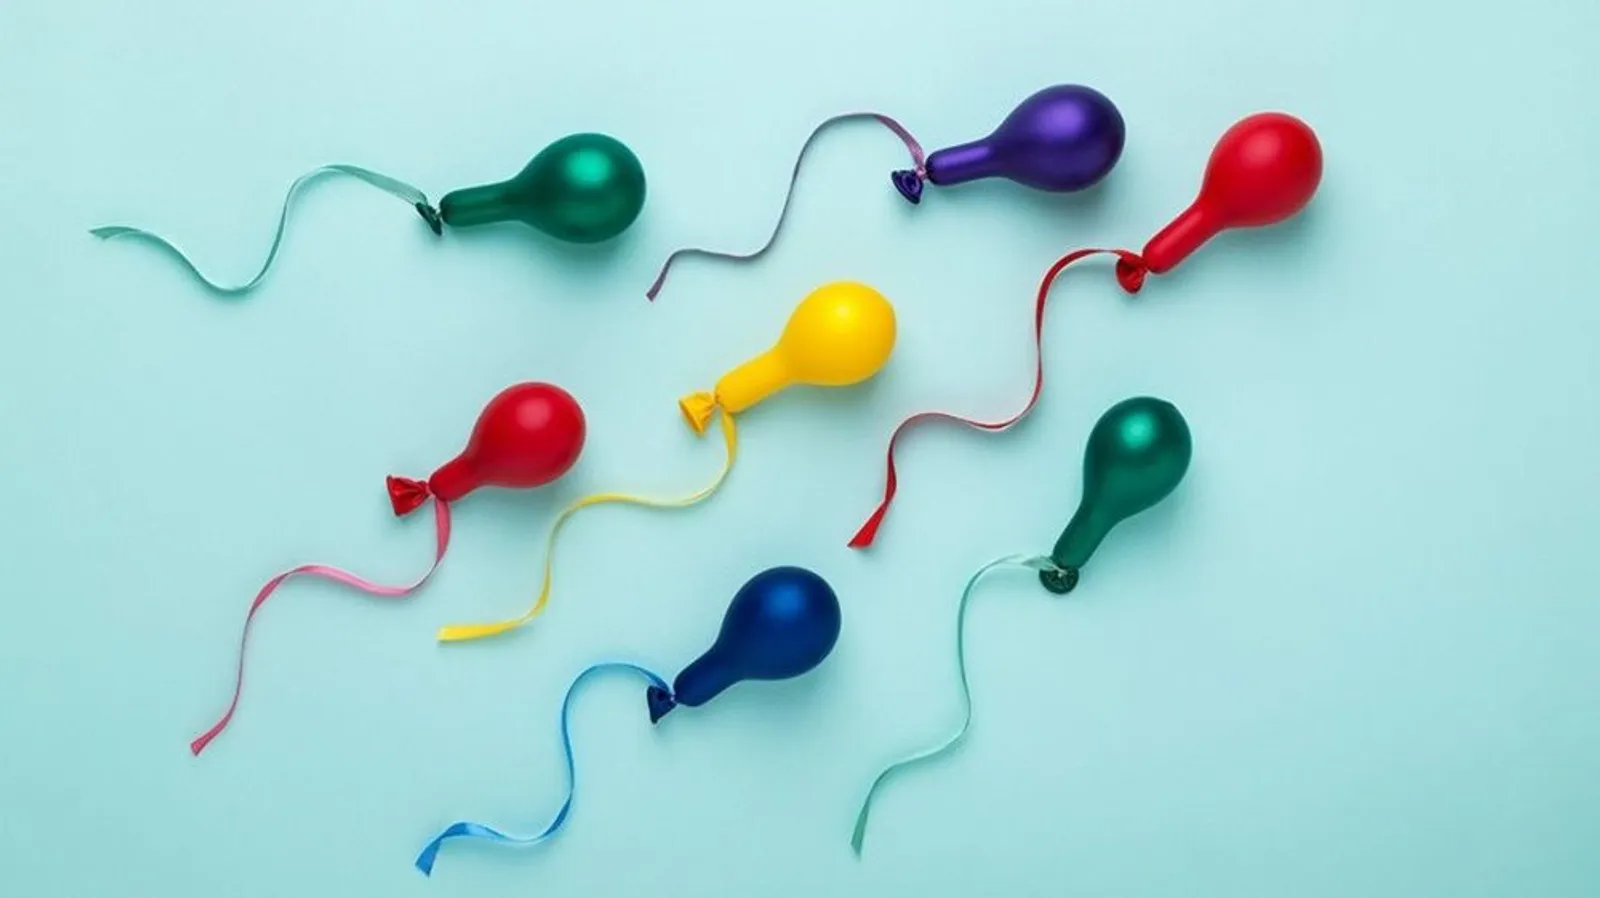 Manfaat Menelan Sperma Bagi Perempuan, Mitos atau Fakta?